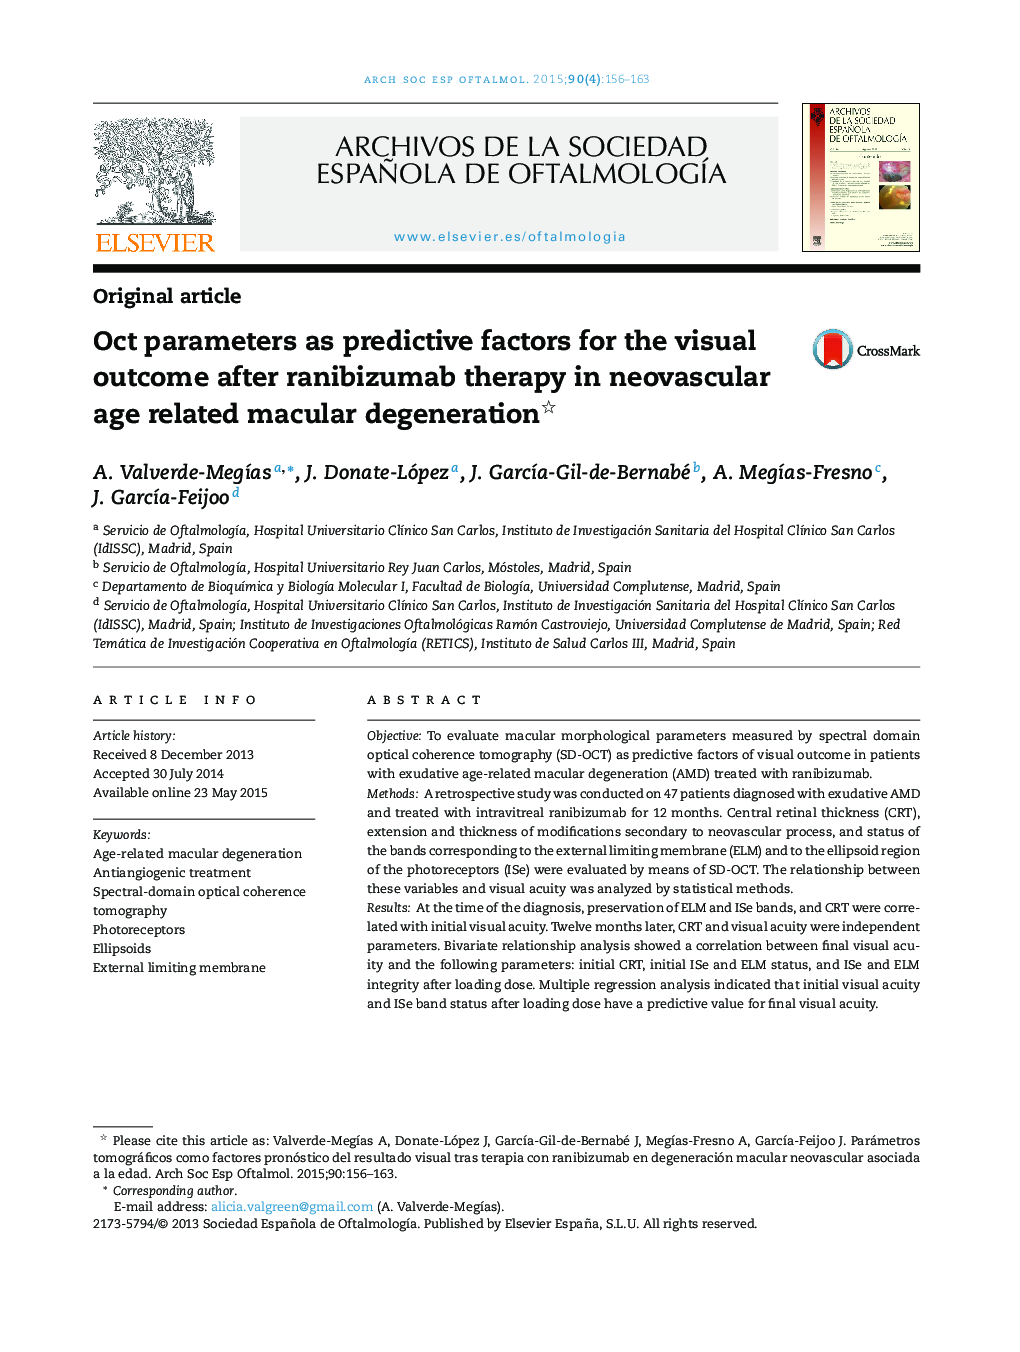 پارامترهای اوت به عنوان عوامل پیش بینی کننده برای نتیجه بصری پس از درمان رانییبیزوماب در دژنراسیون ماکولا مرتبط با سن نوزادان 